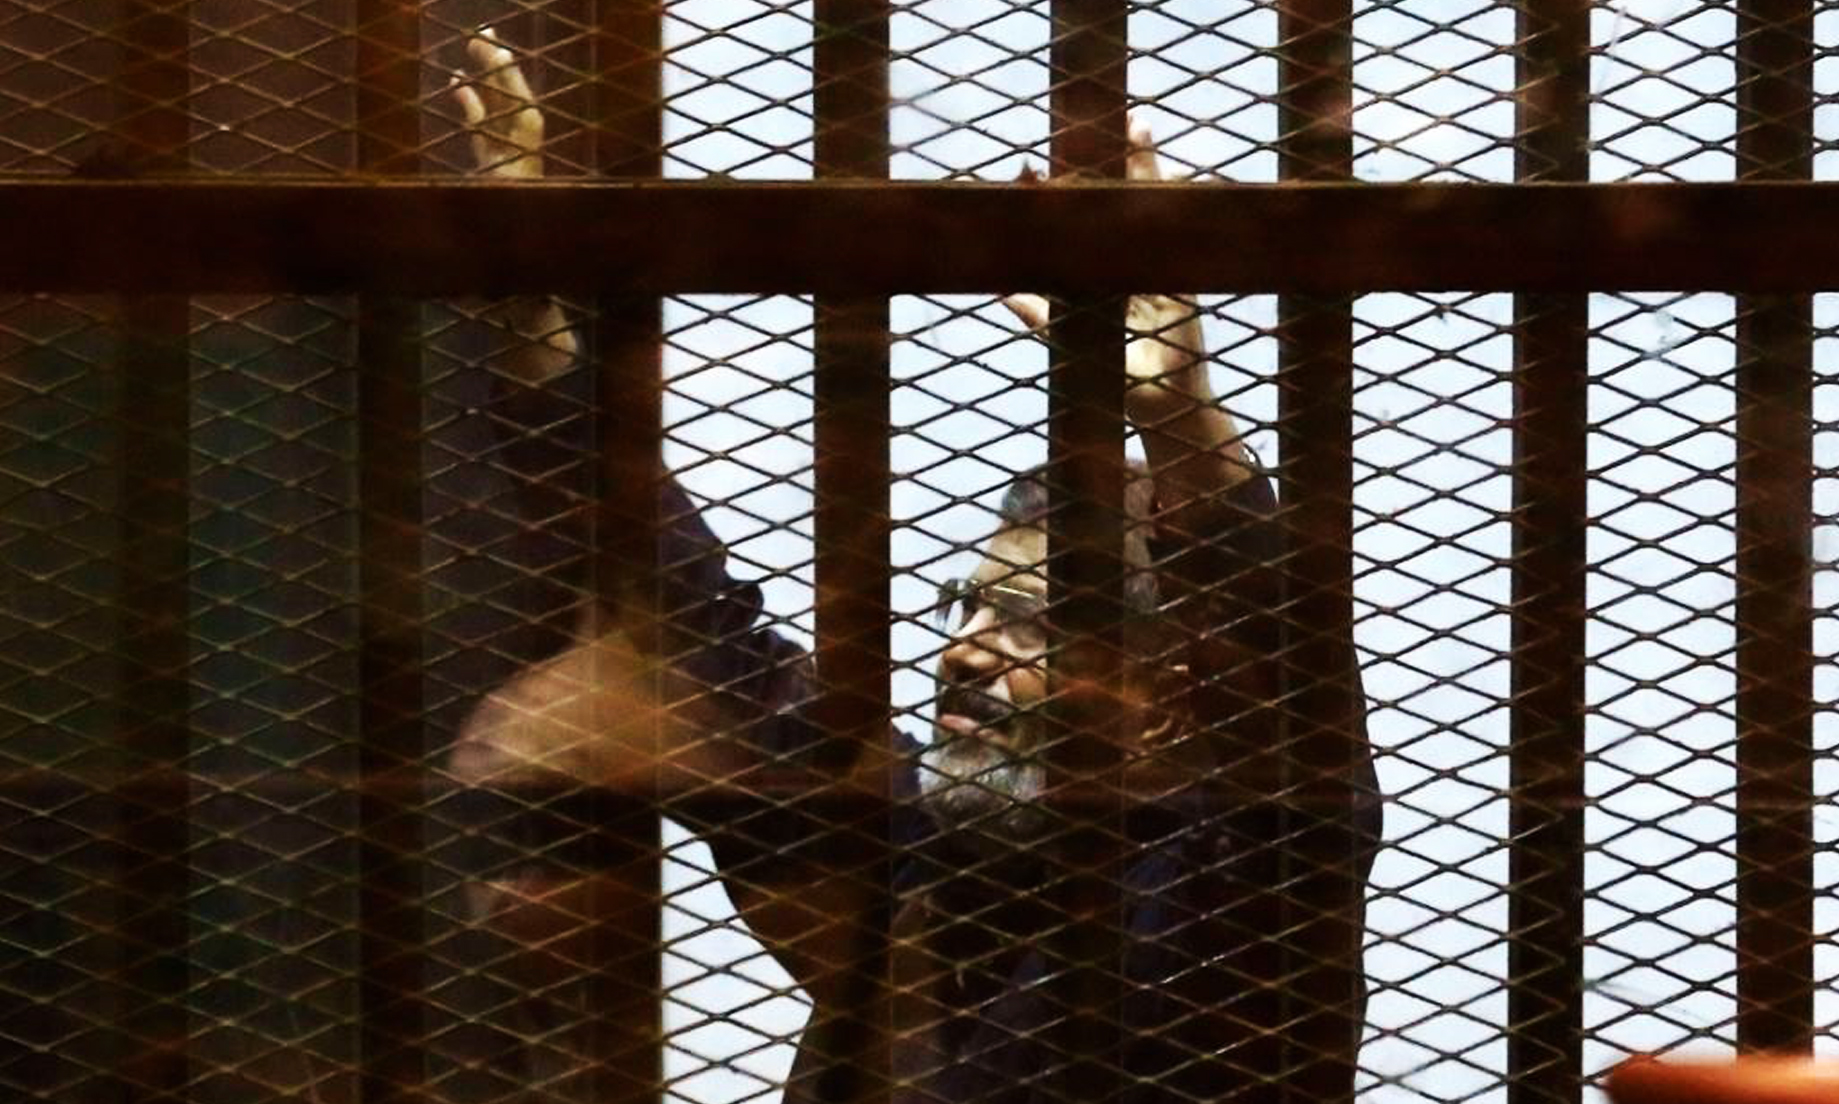 Egypt’s ousted president Mohammed Morsi dies during trial